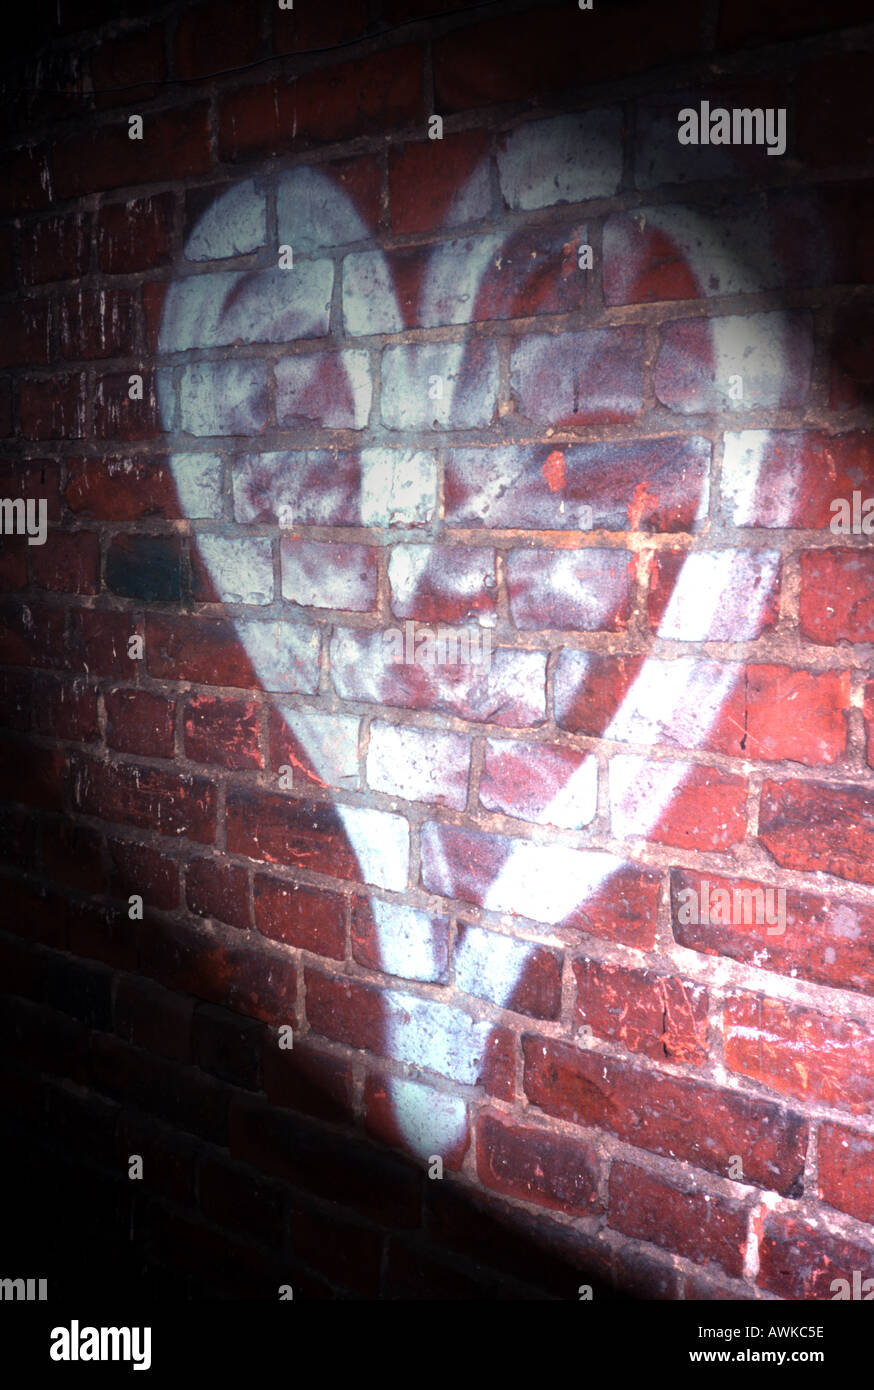 Heart graffiti painted on wall Stock Photo